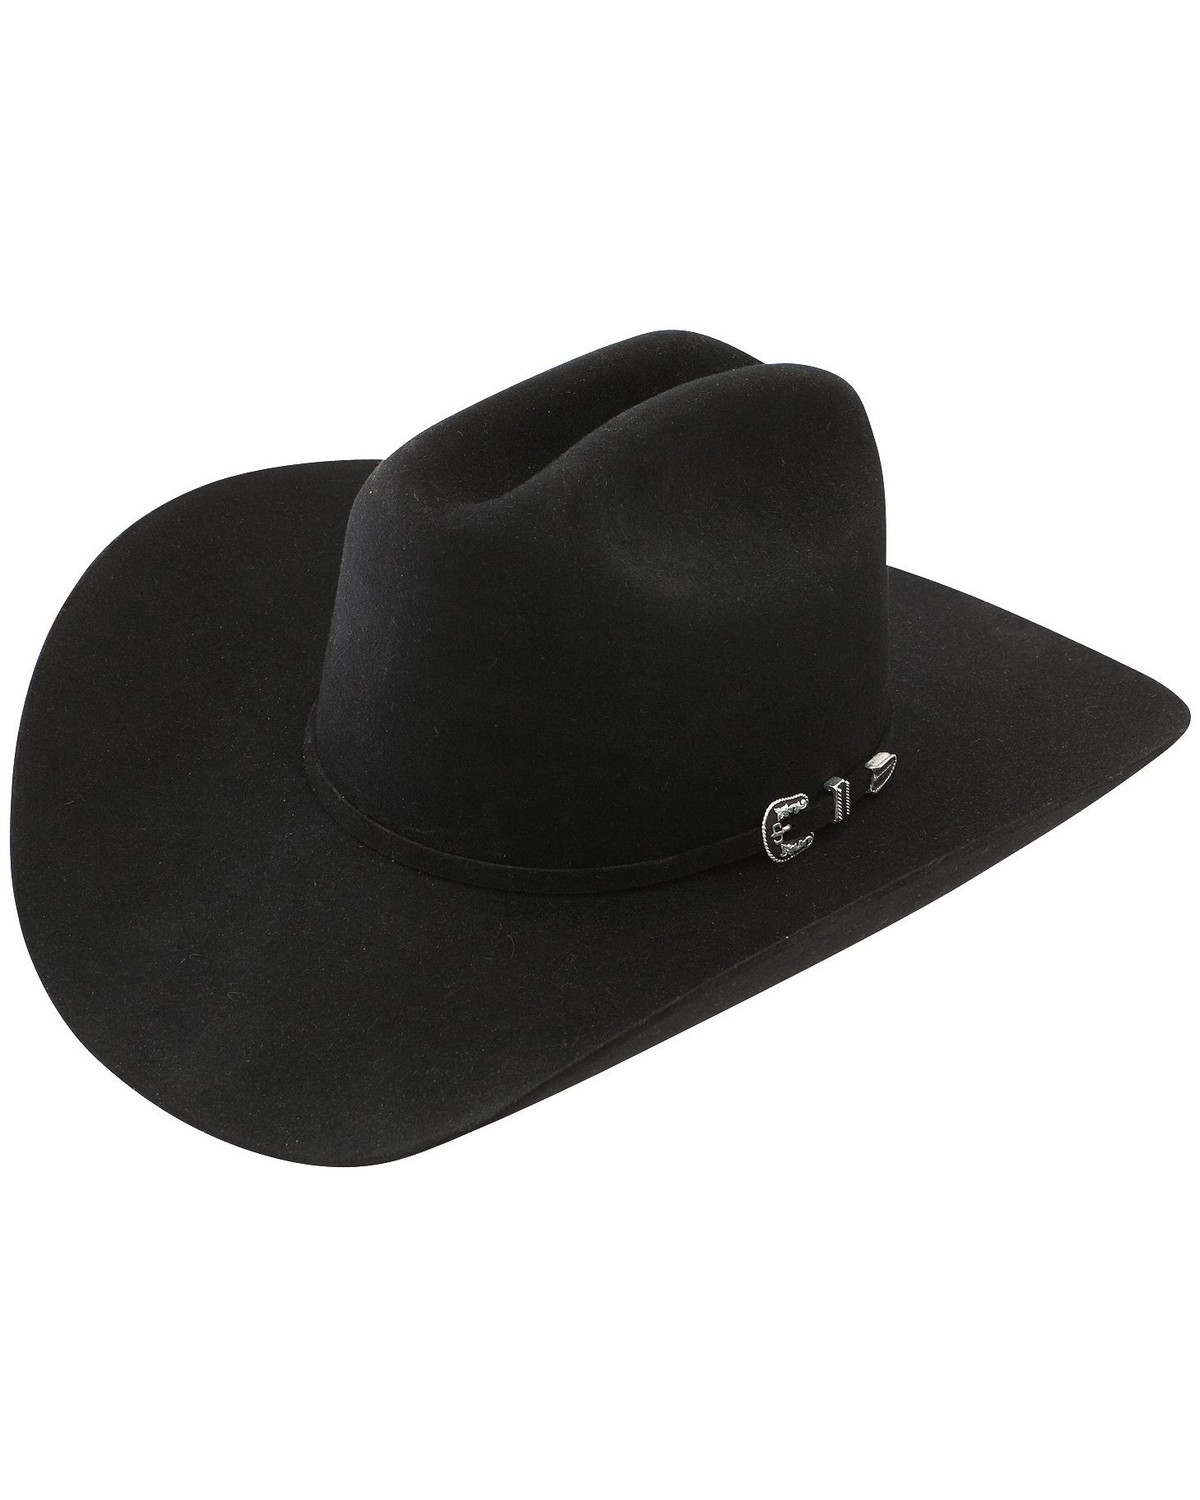 Black Cowboy Hats